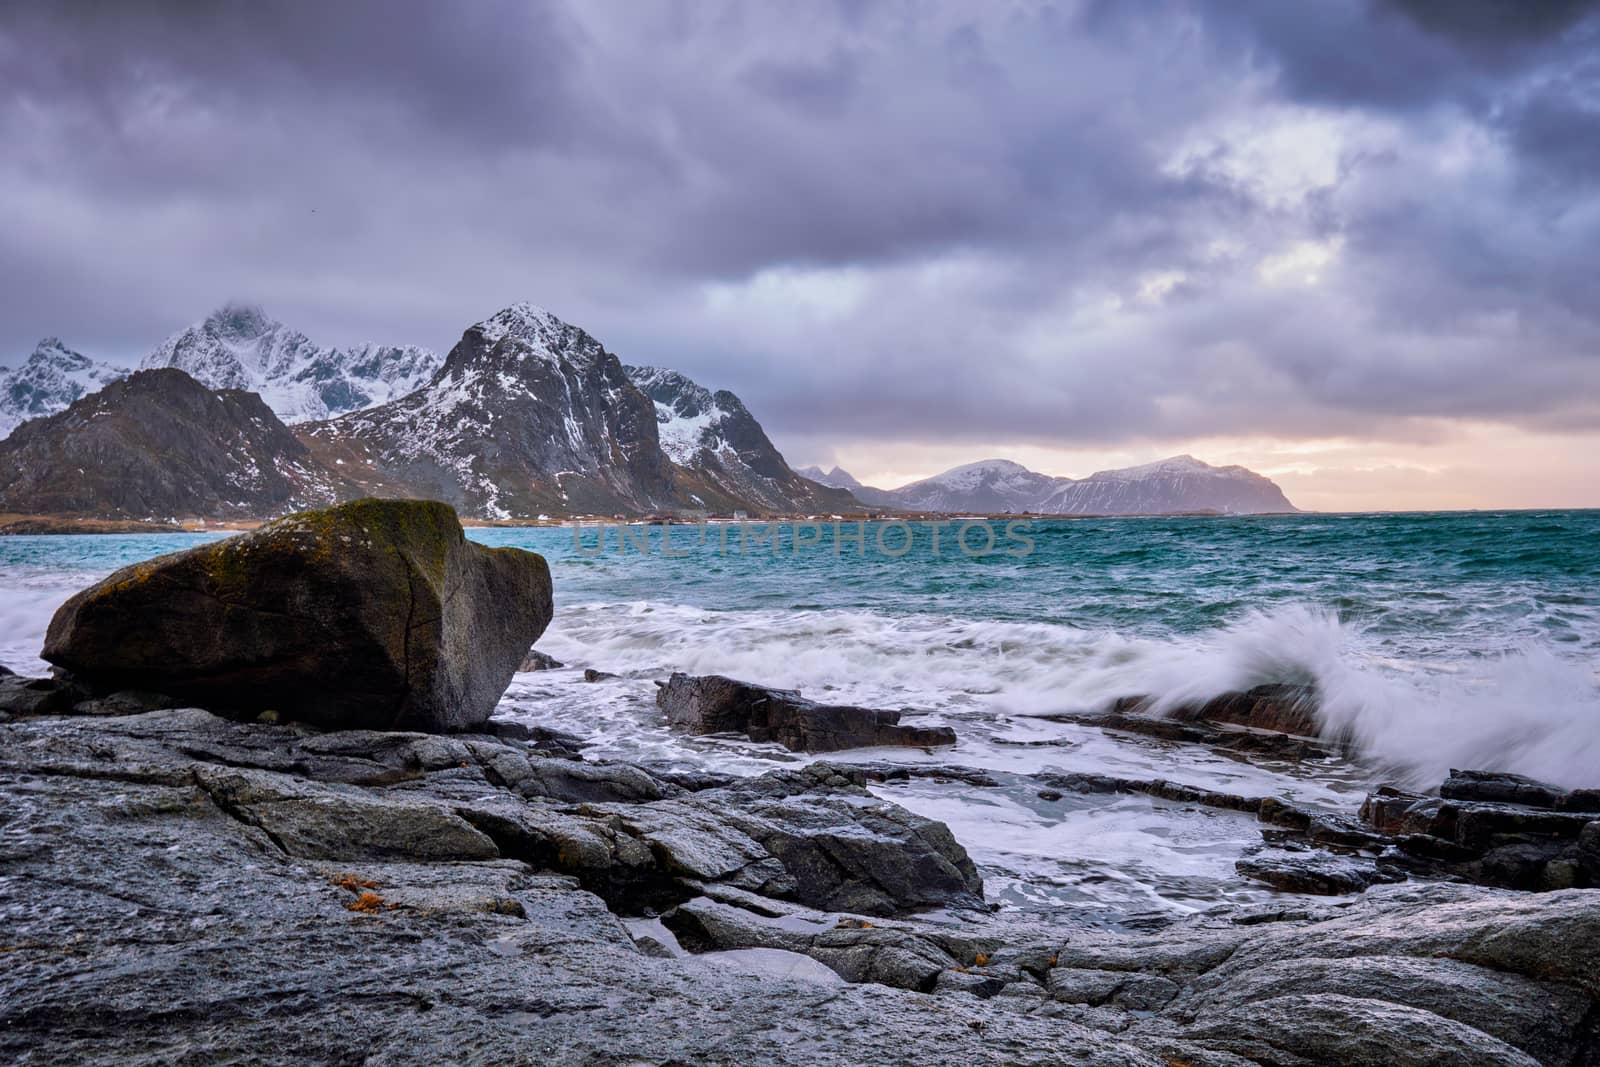 Rocky coast of fjord of Norwegian sea in winter. Vareid, Lofoten islands, Norway